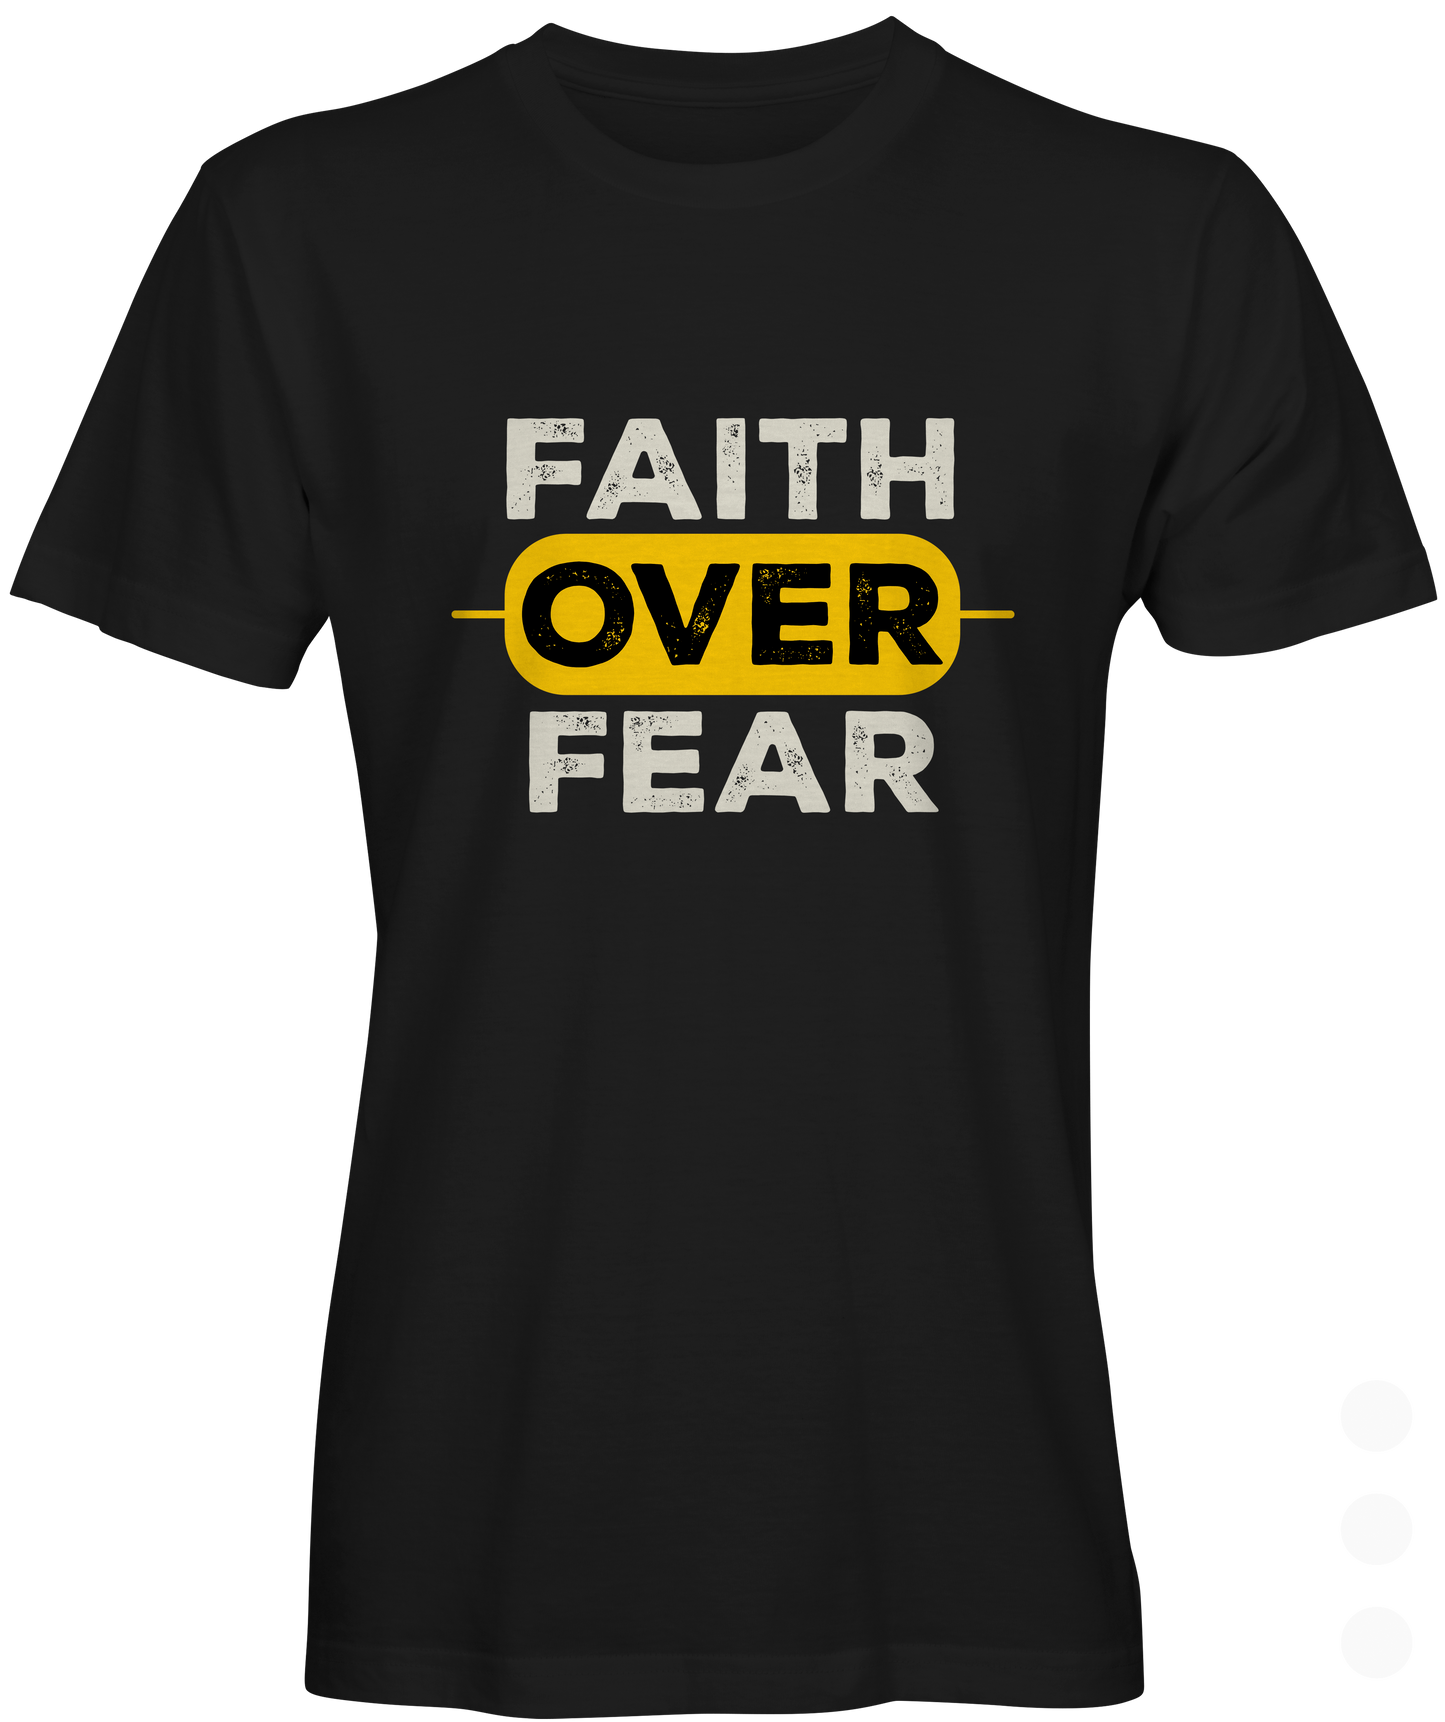 Black Faith over fear T-shirt